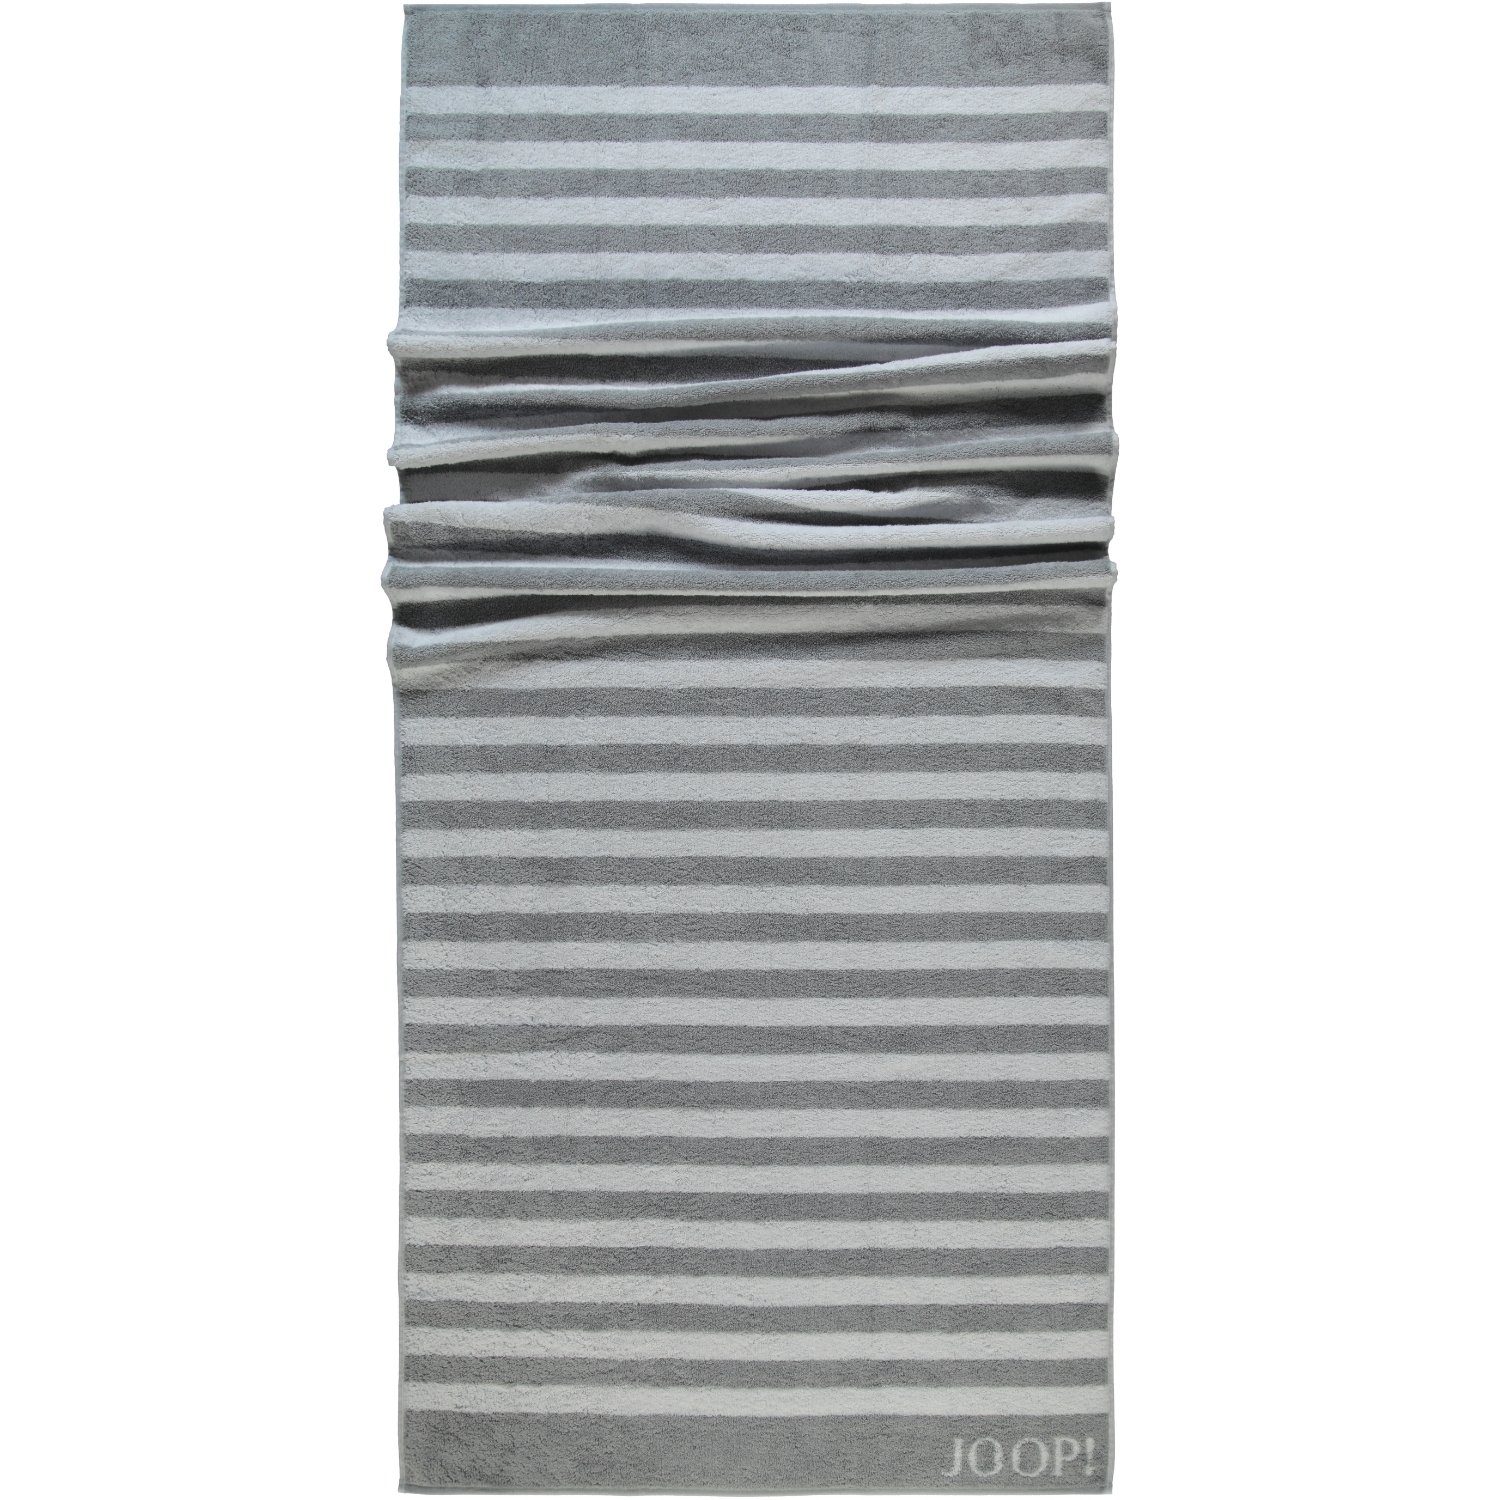 (76) Silber Joop! Handtücher Classic 100% Stripes Baumwolle 1610,